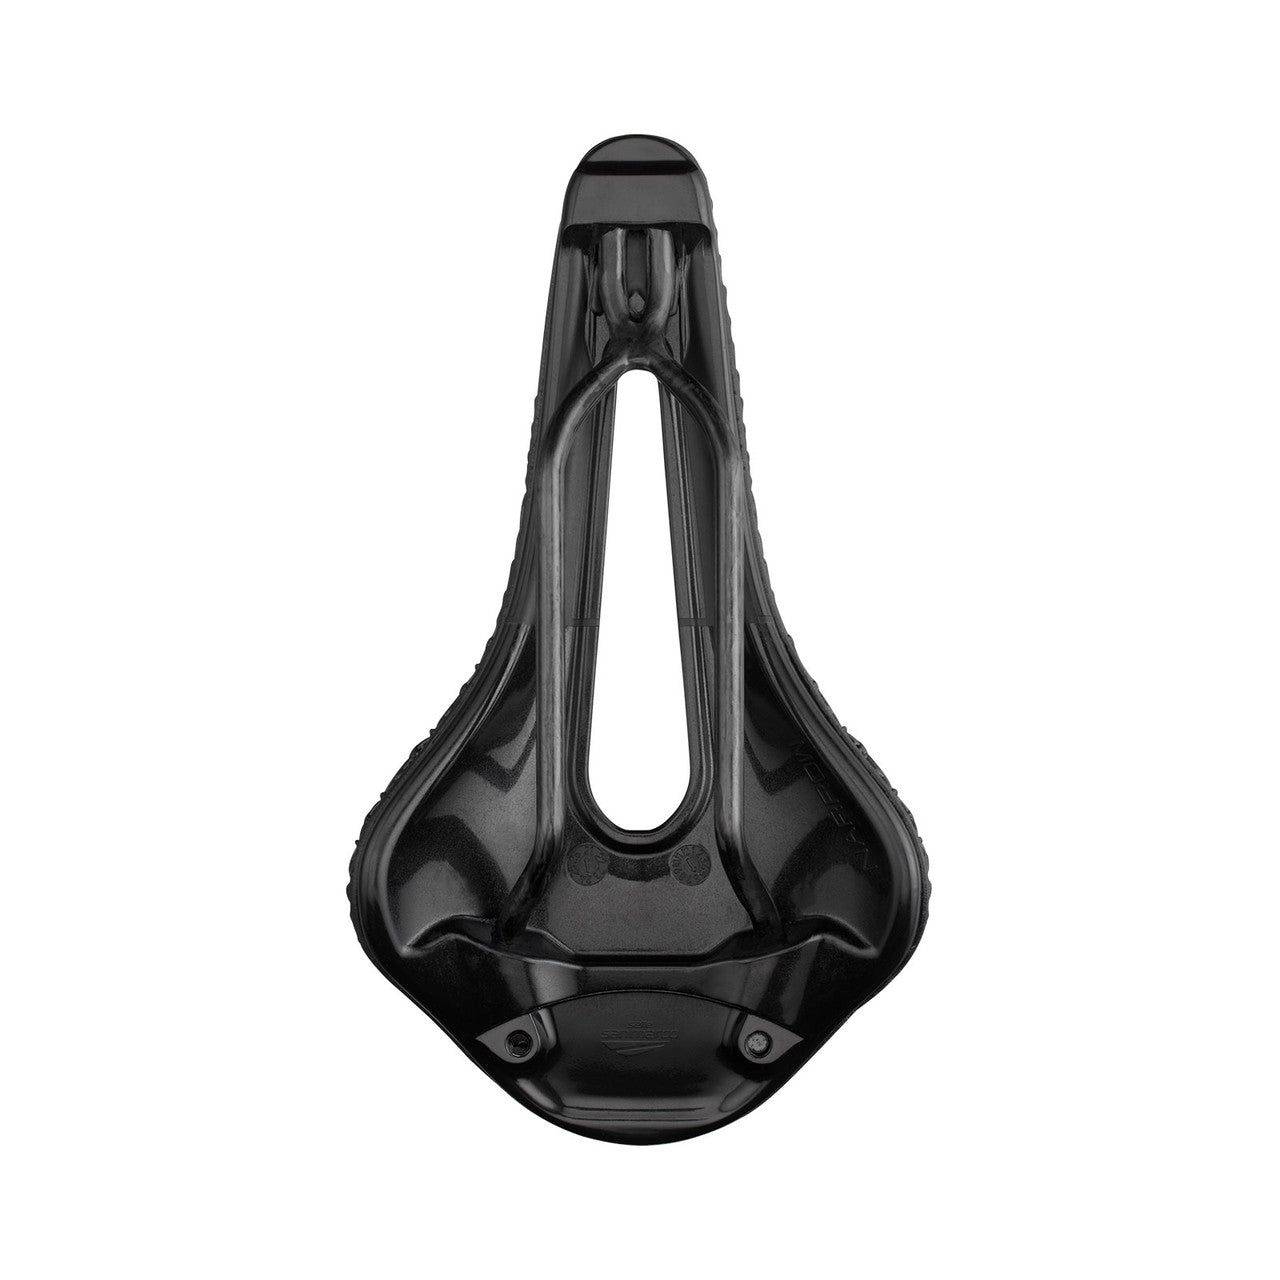 Sella San Marco Shortfit 2.0 3D Carbon FX S3